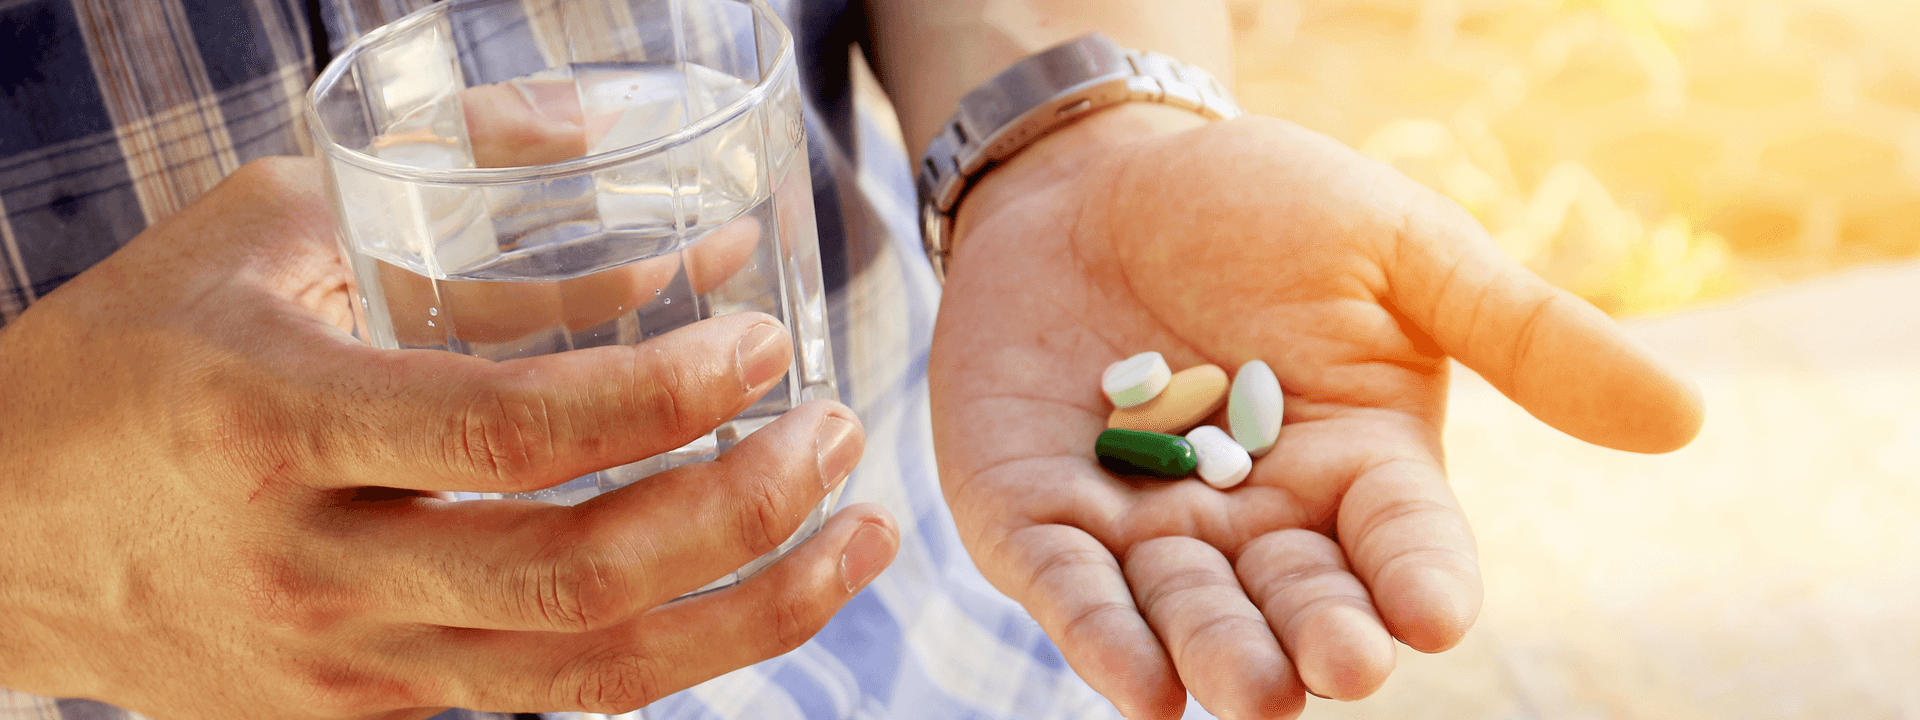 "Case closed" against Vitamin Pills